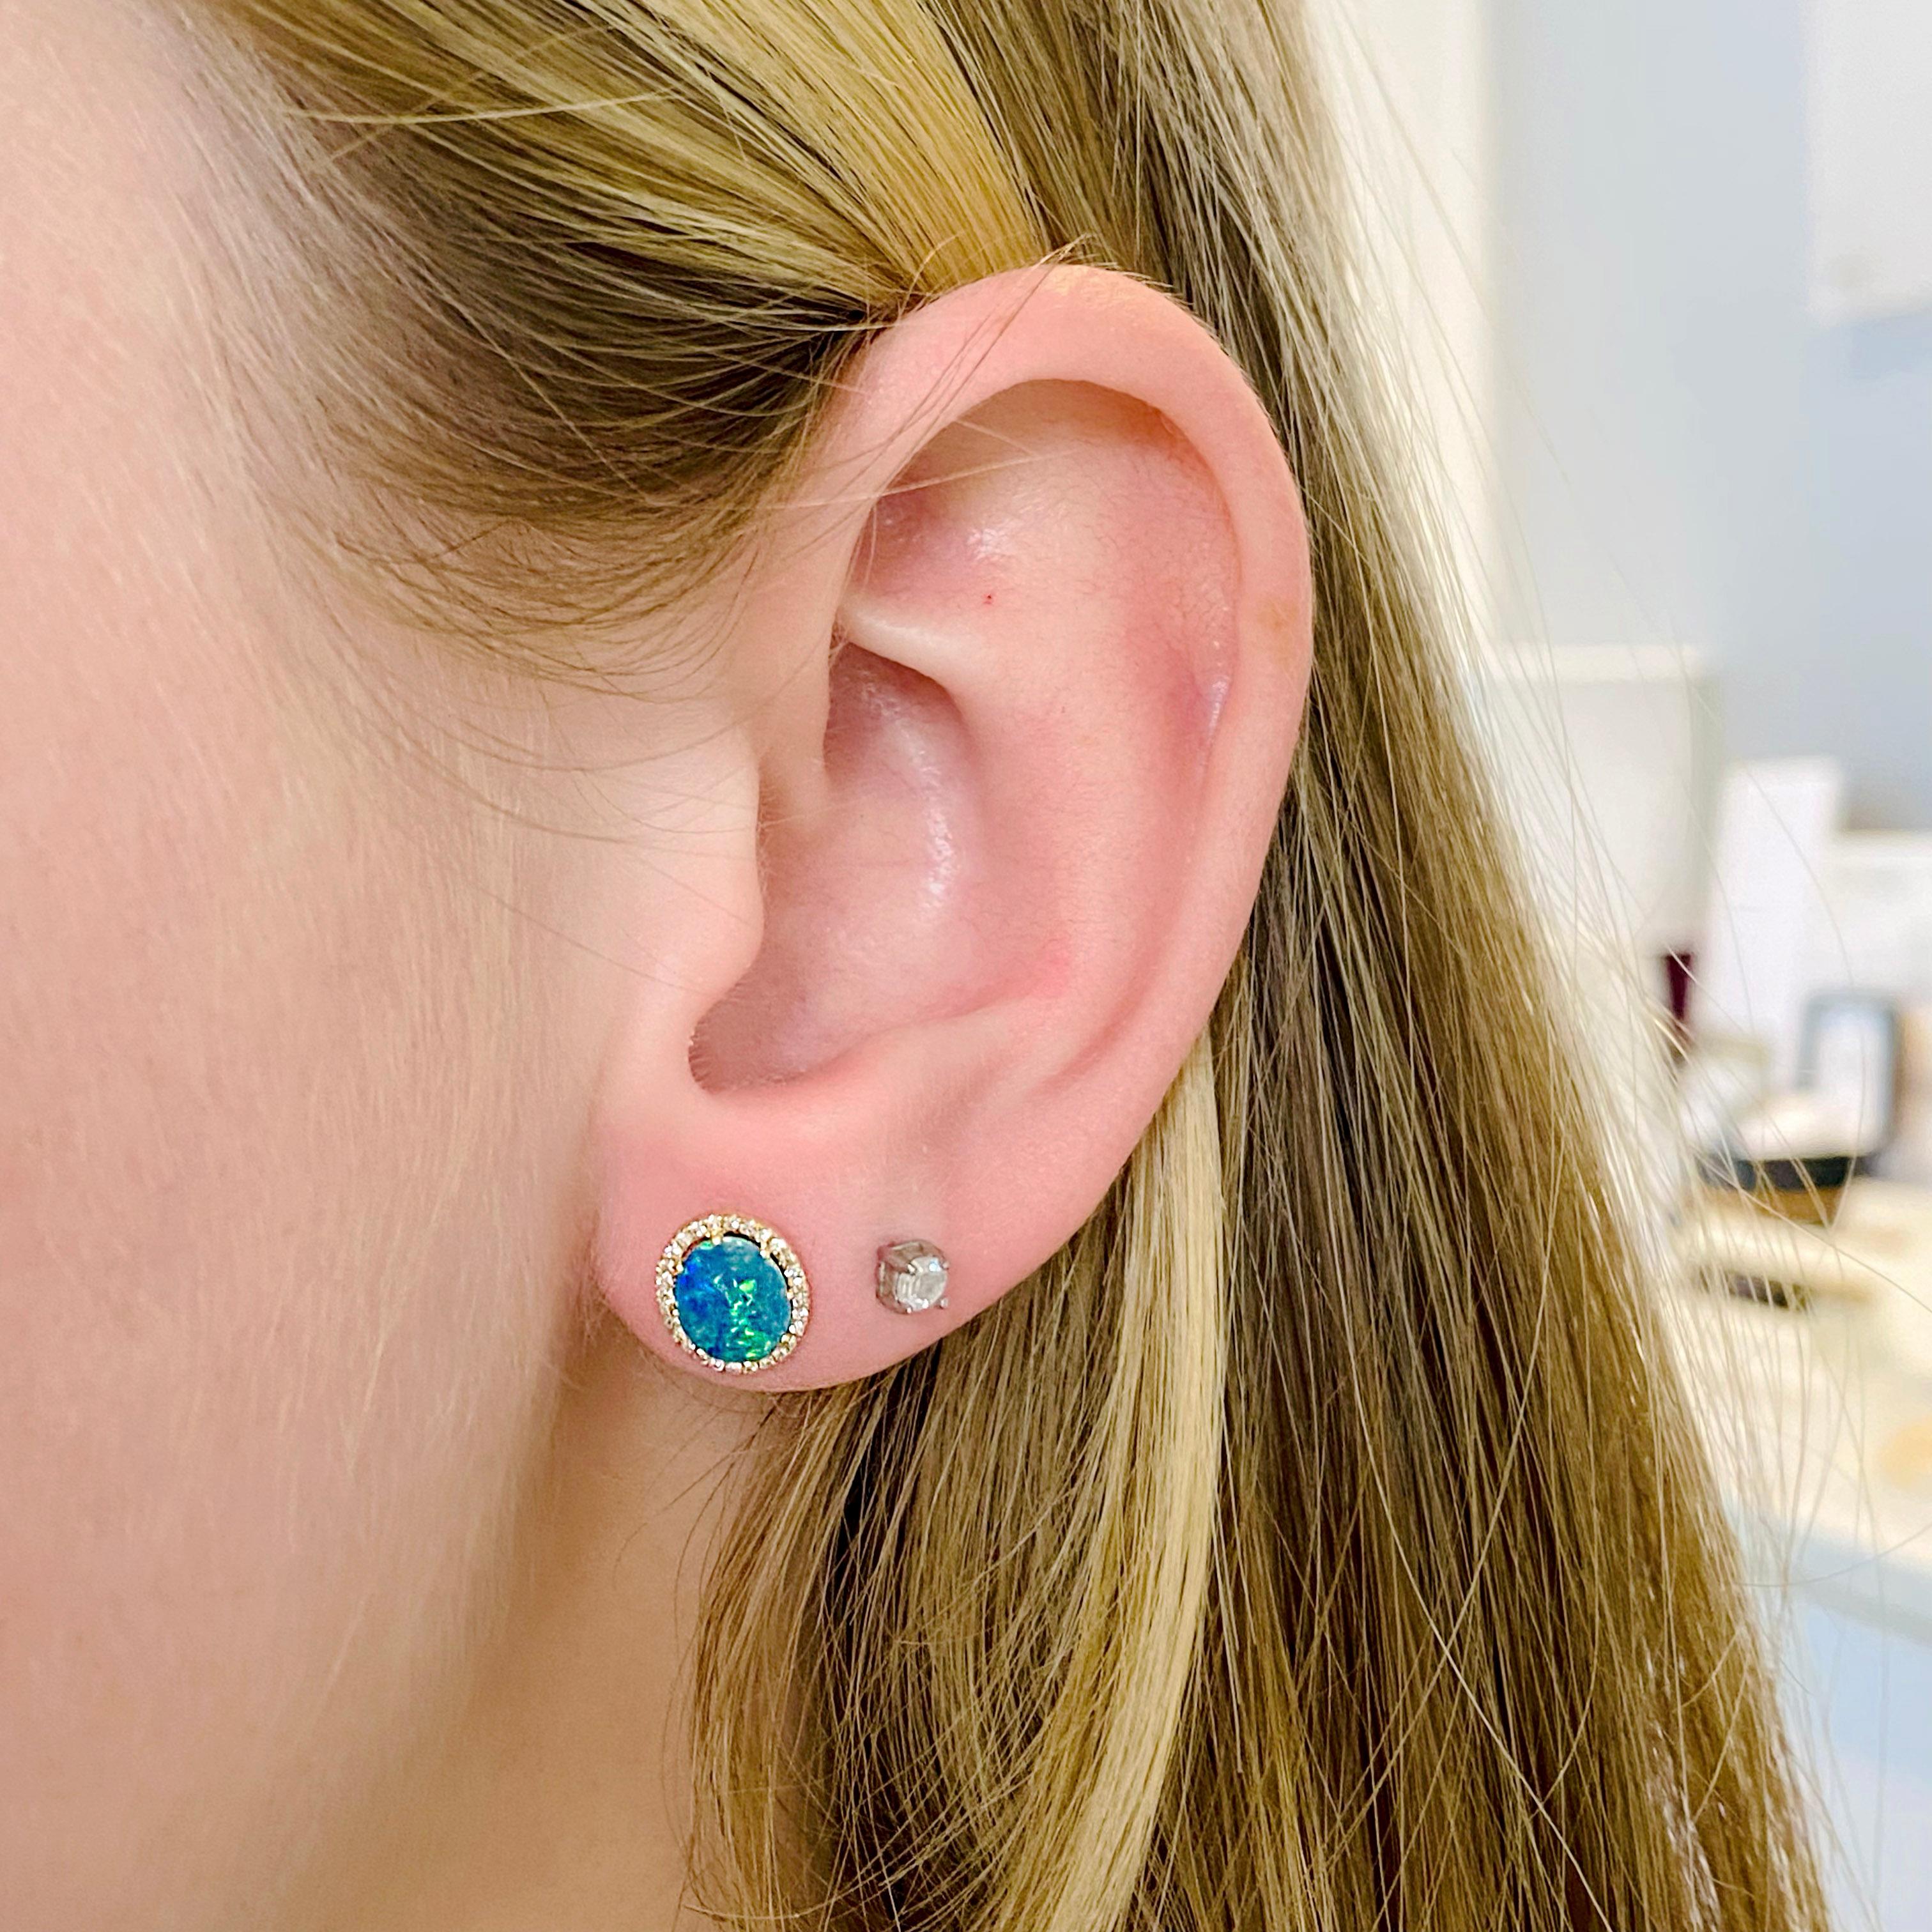 Ces boucles d'oreilles en opale noire avec des diamants en halo sont de magnifiques clous d'oreilles. Elles sont serties en or jaune 14 carats et constituent une belle déclaration. Le poids total des opales et des diamants est de 0,94 carats. Ils